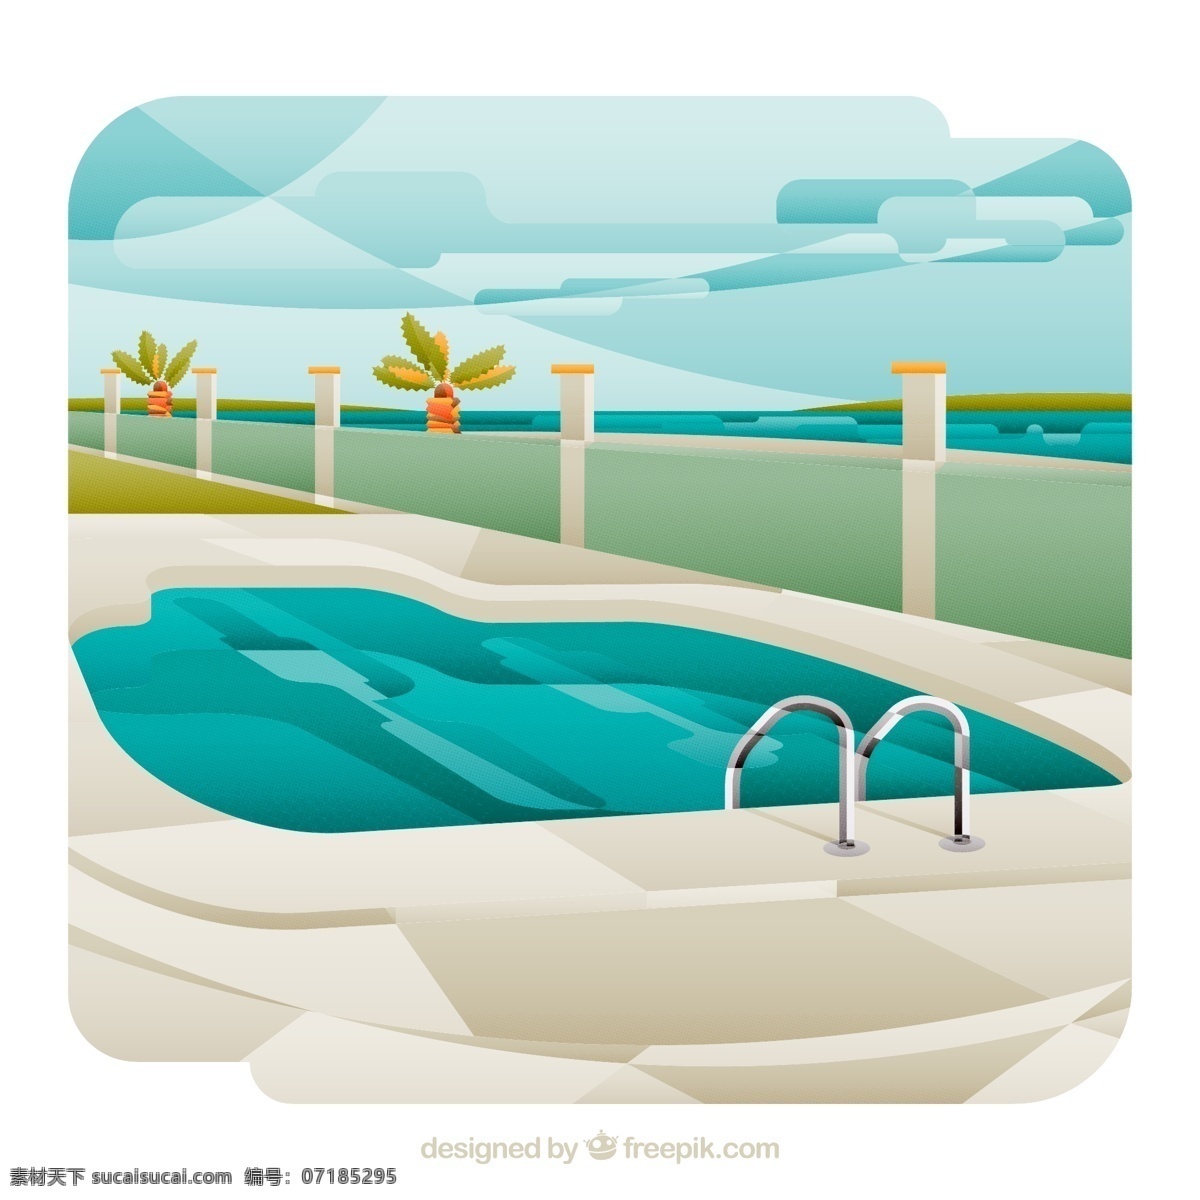 简单扁平素材 游泳池素材 扁平素材 风景 白色